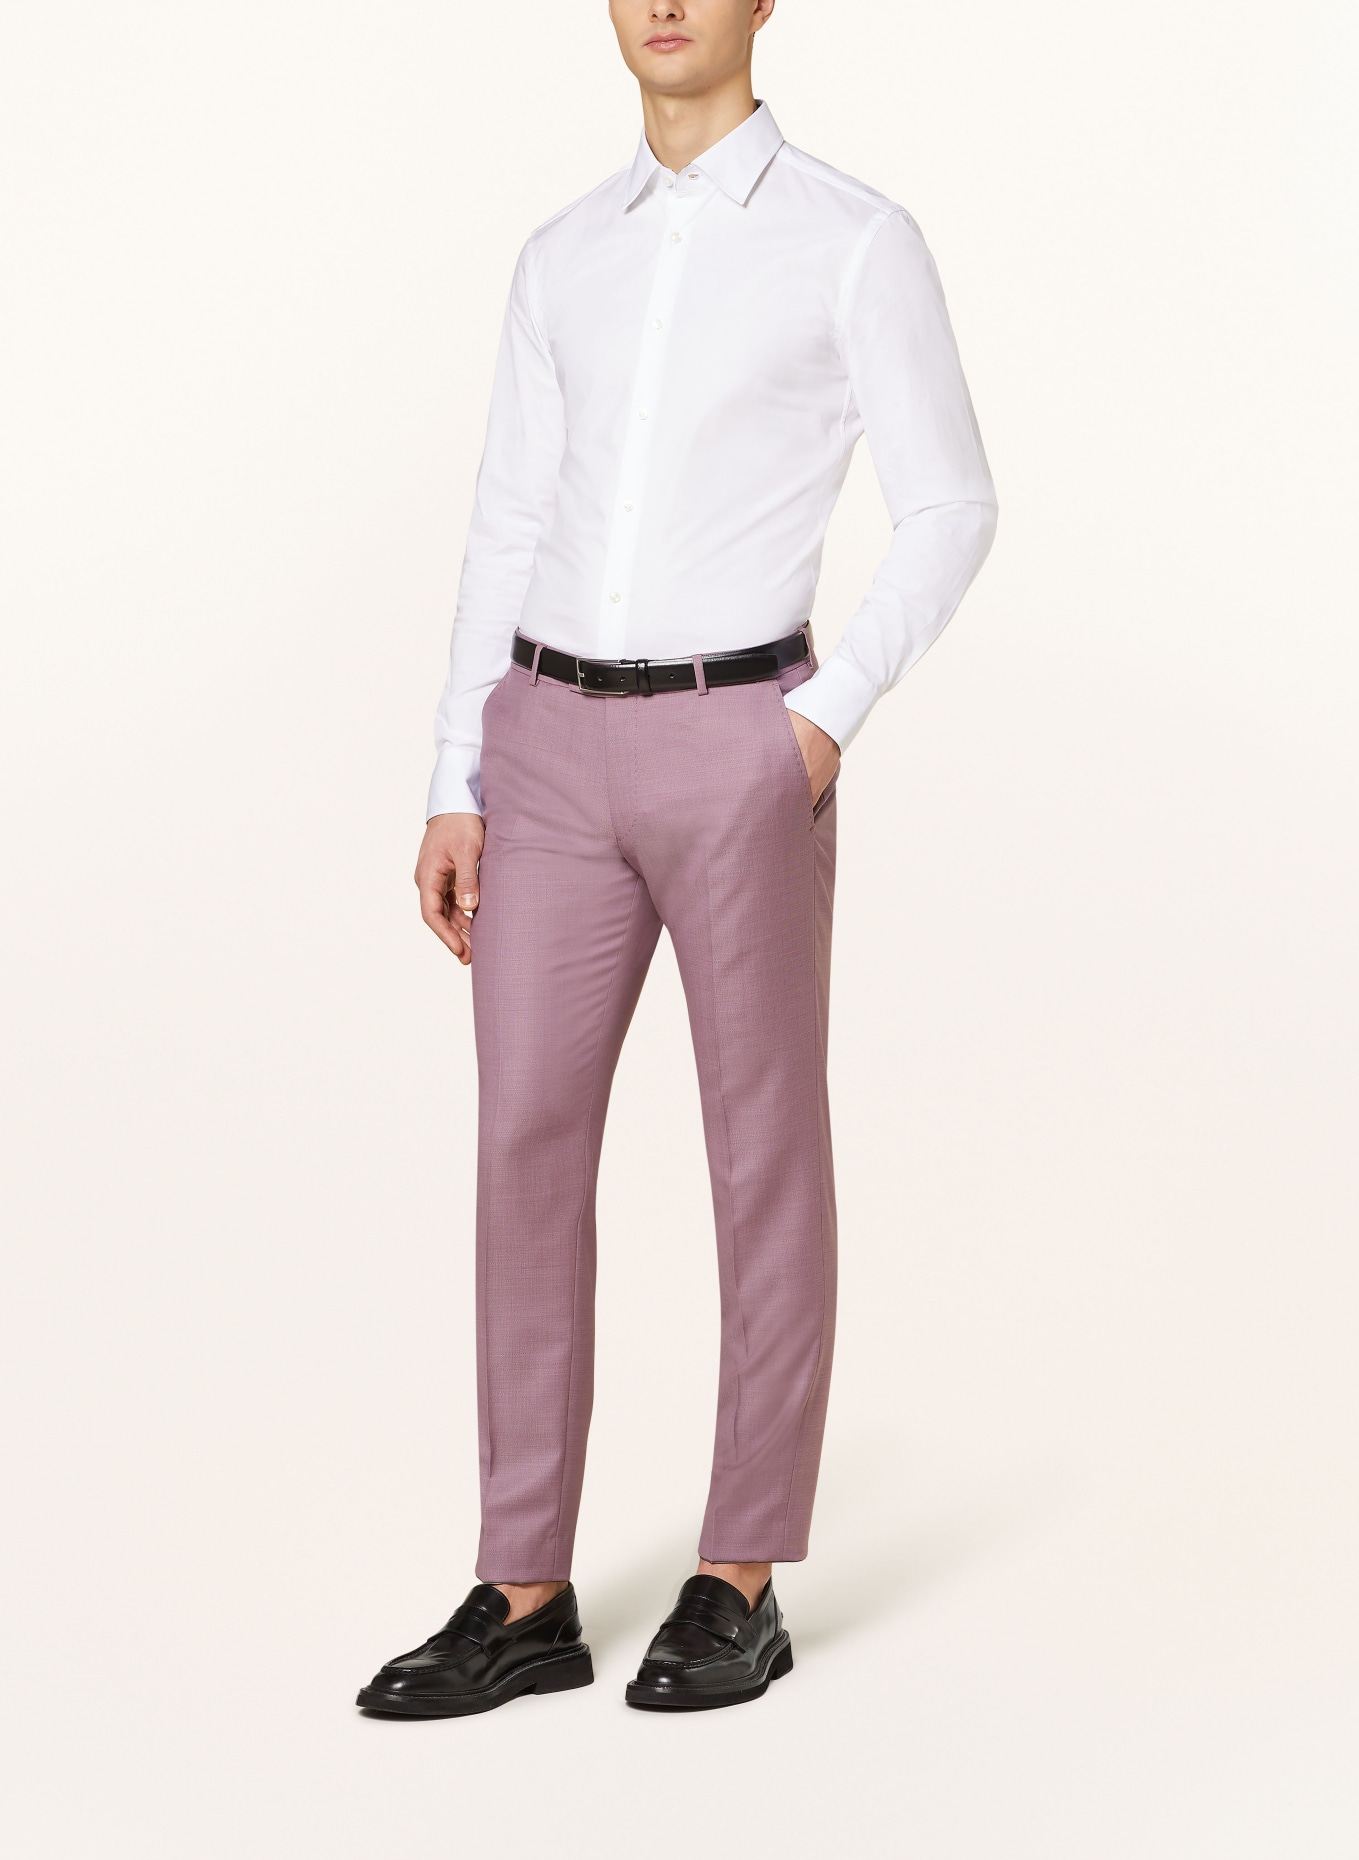 JOOP! Suit trousers BLAYR slim fit, Color: 650 Dark Pink                  650 (Image 3)